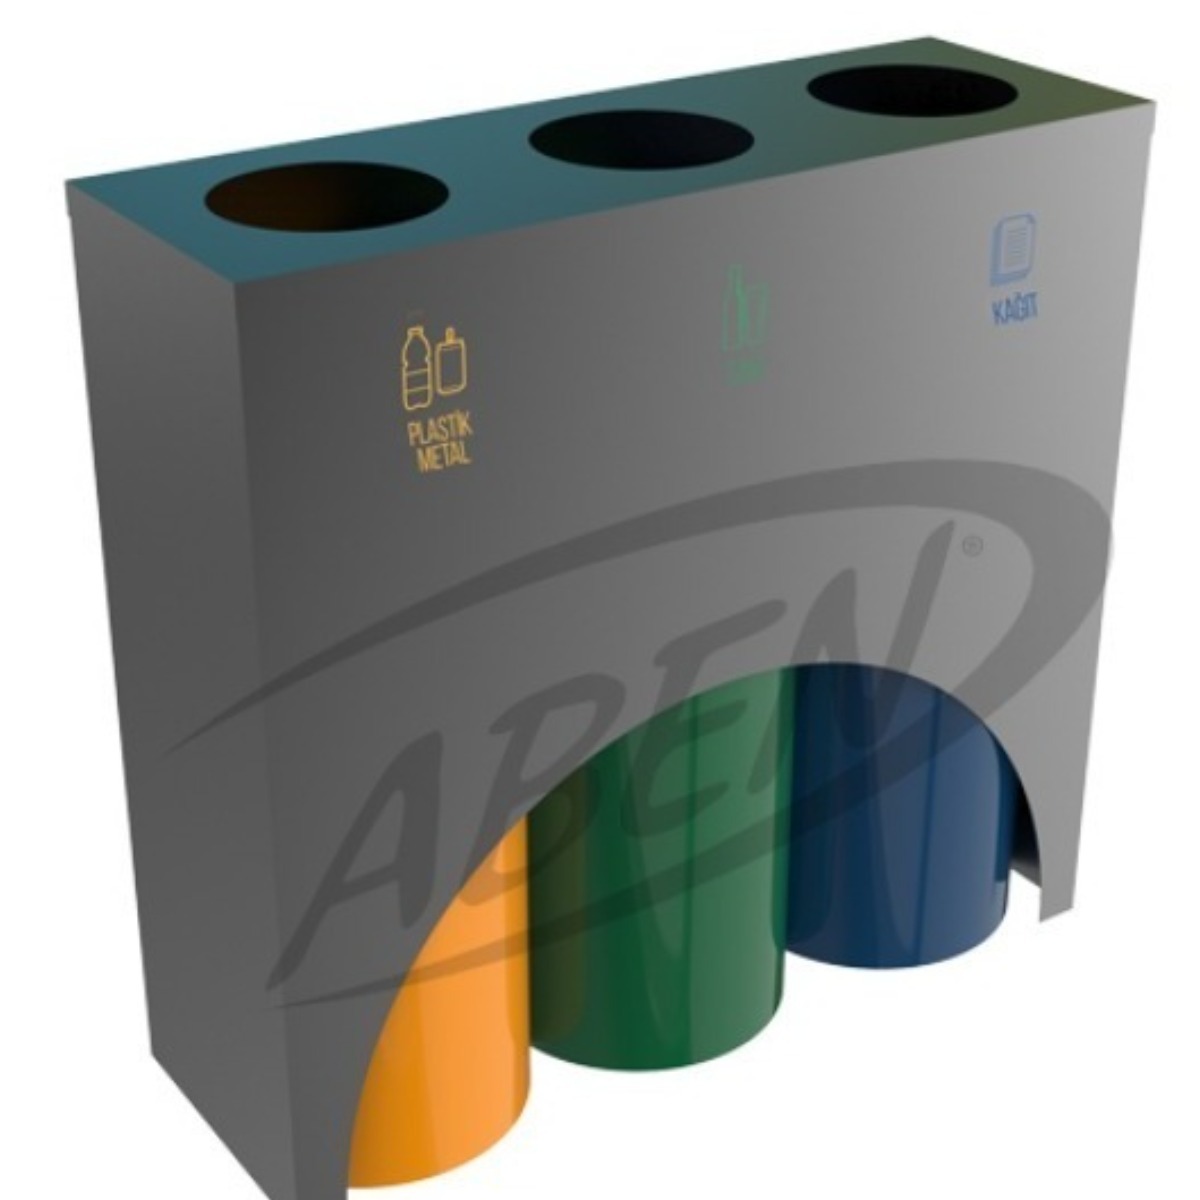 AB-795 3'Part Recycle Bin adlı ürünün logosu